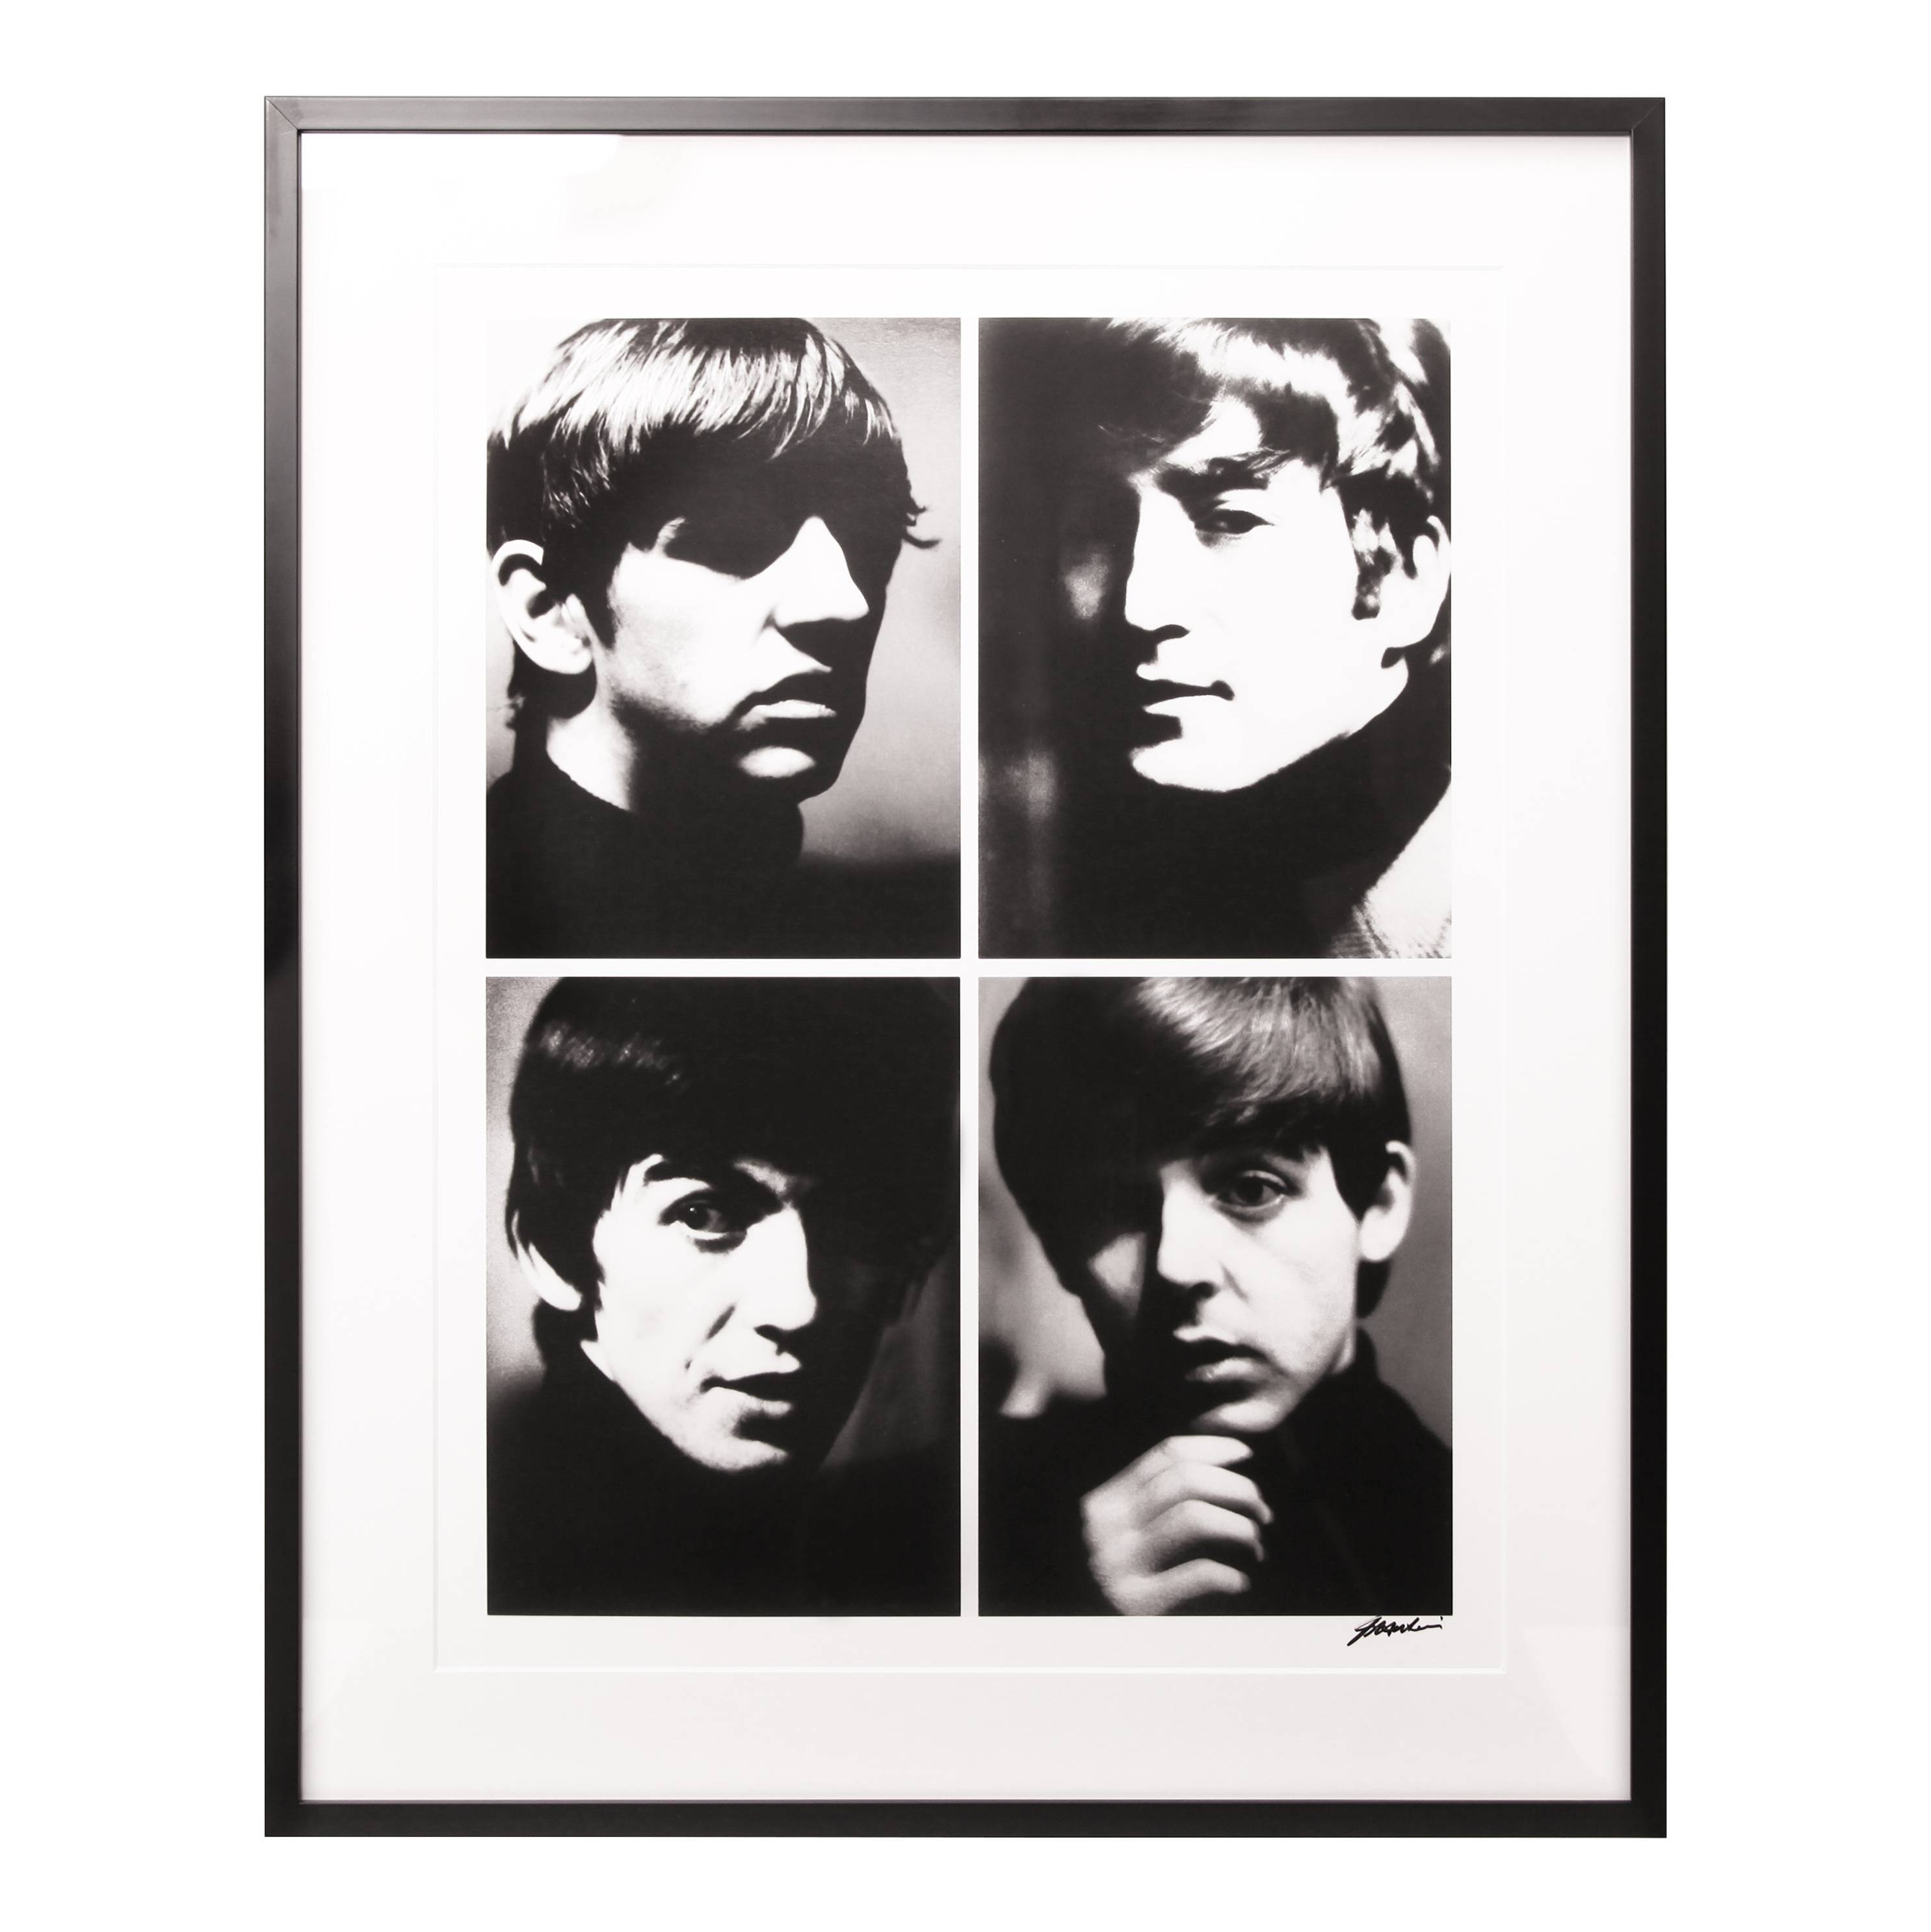 Shahrokh Hatami, "The Beatles Liverpool", photographie encadrée et signée - 00pp